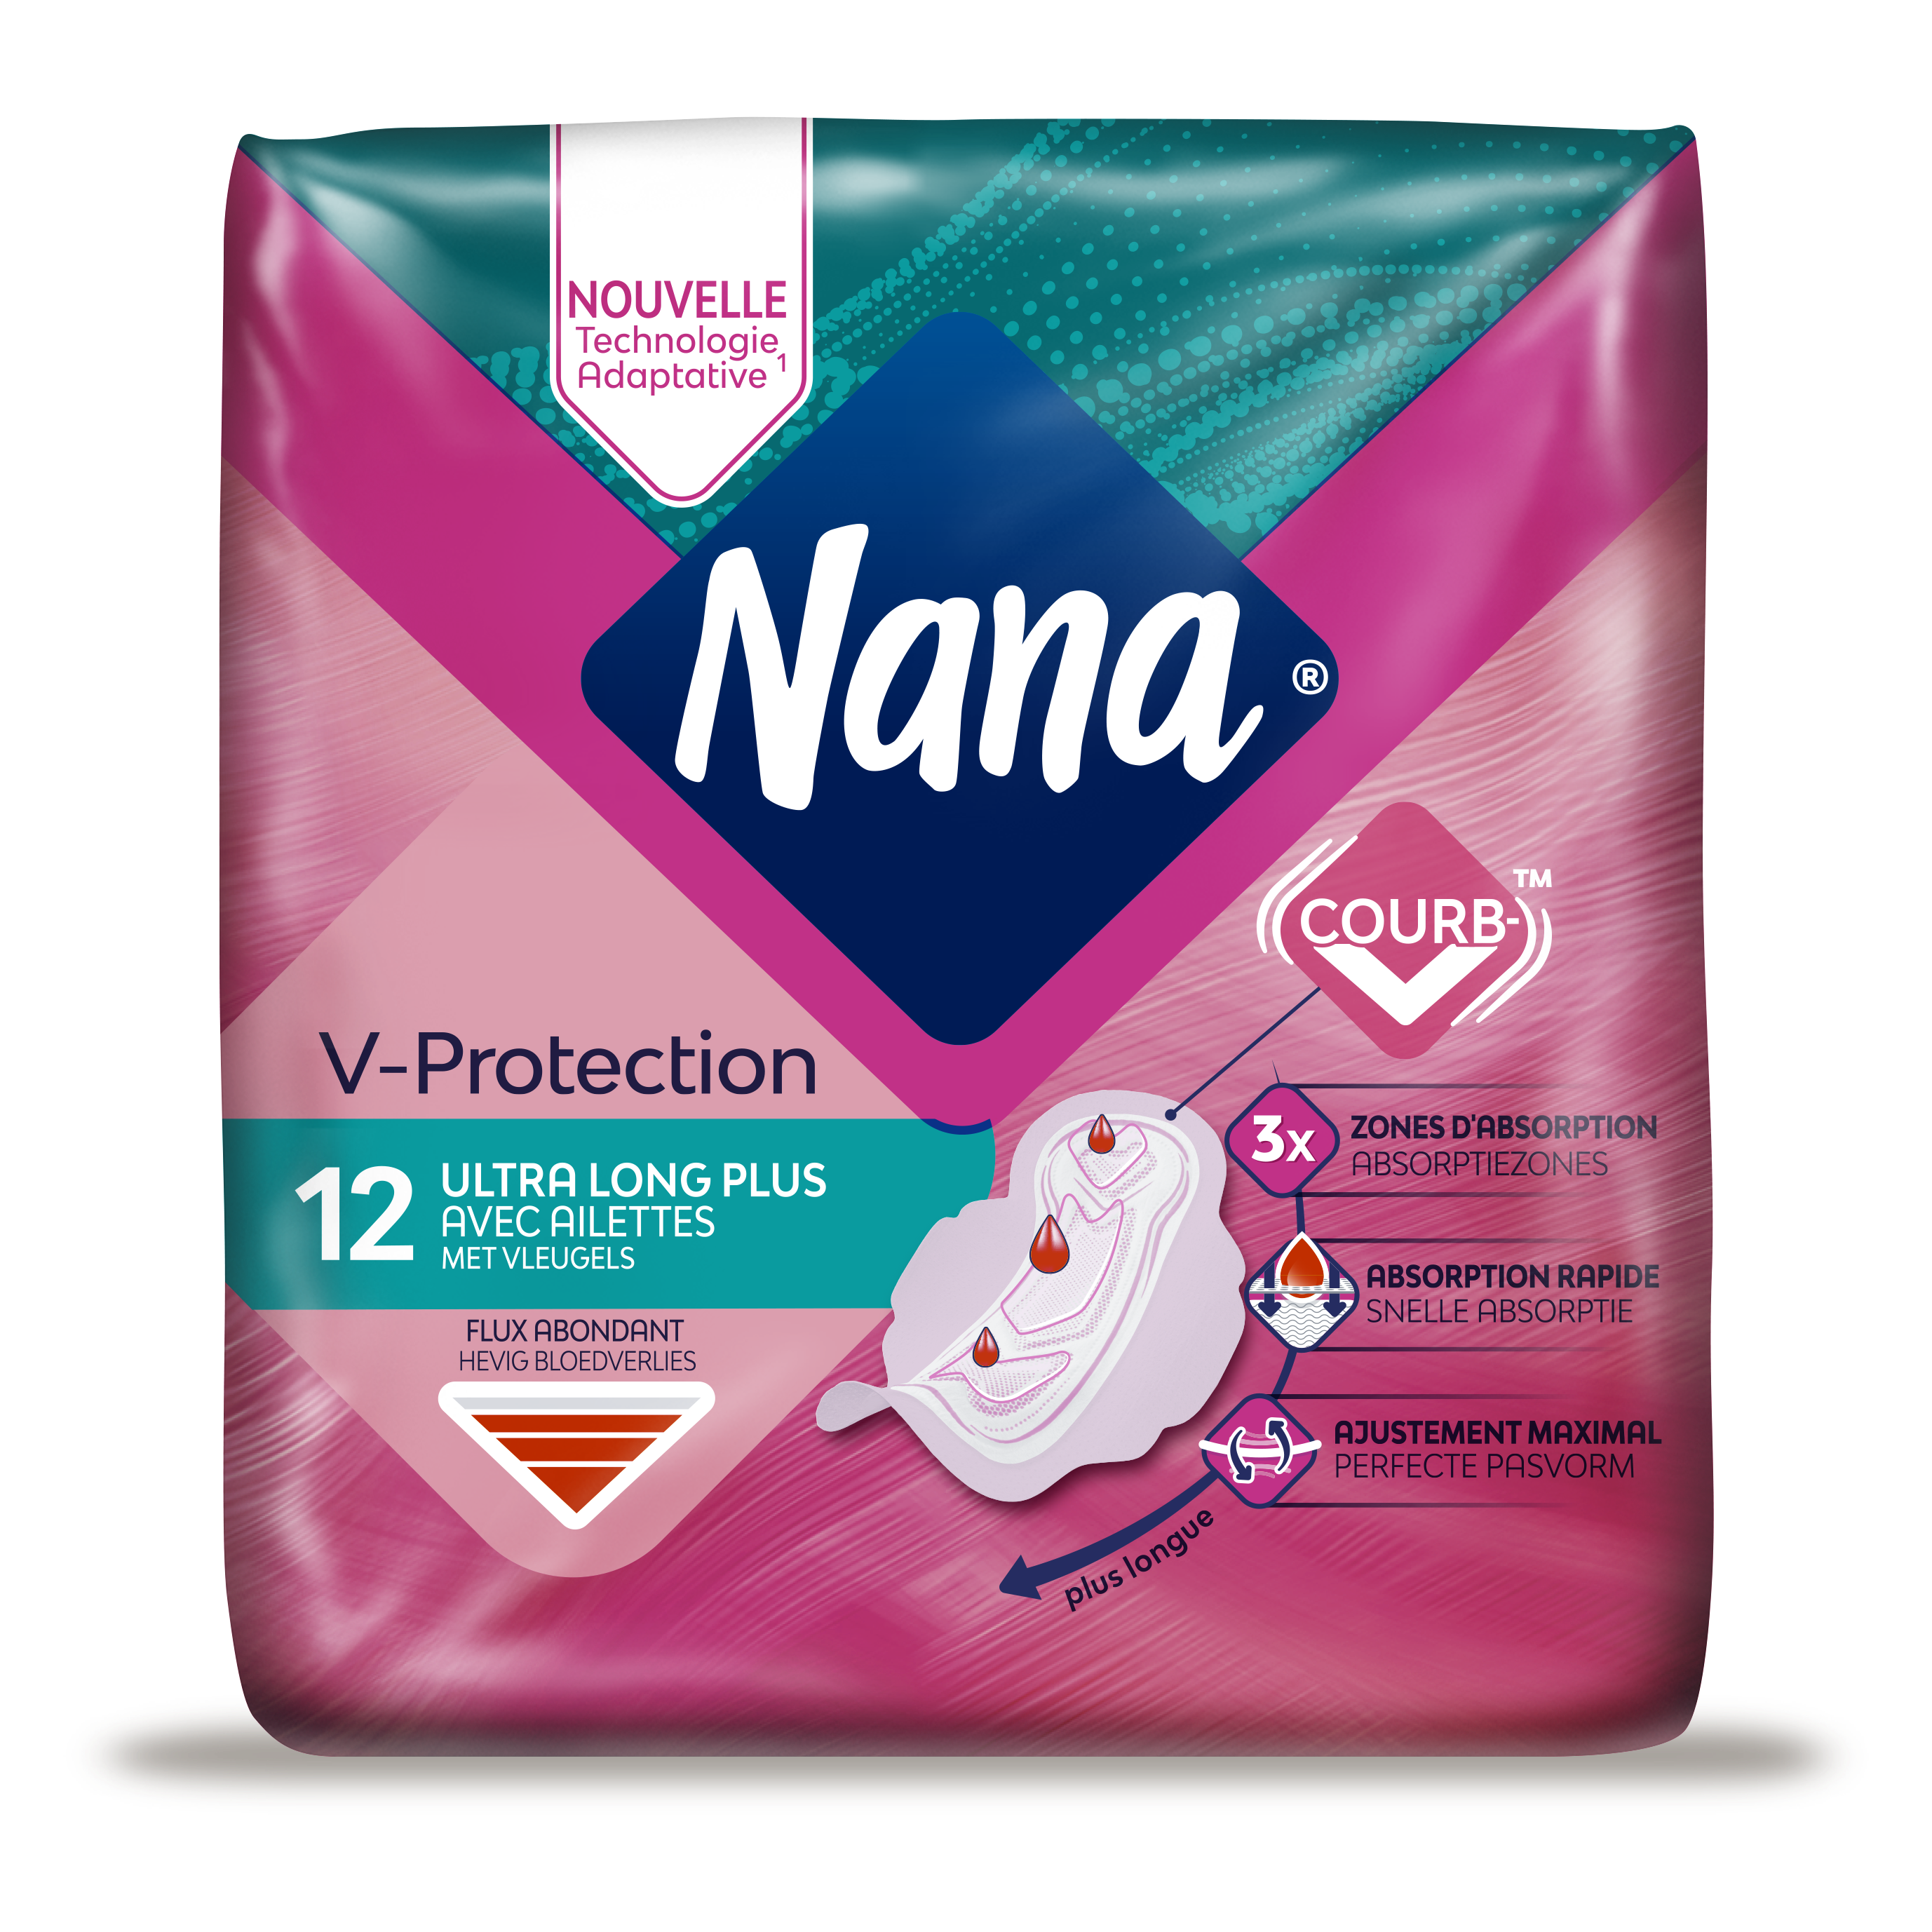 Serviettes hygiéniques Nana Ultra Goodnight Large pour flux très abondants